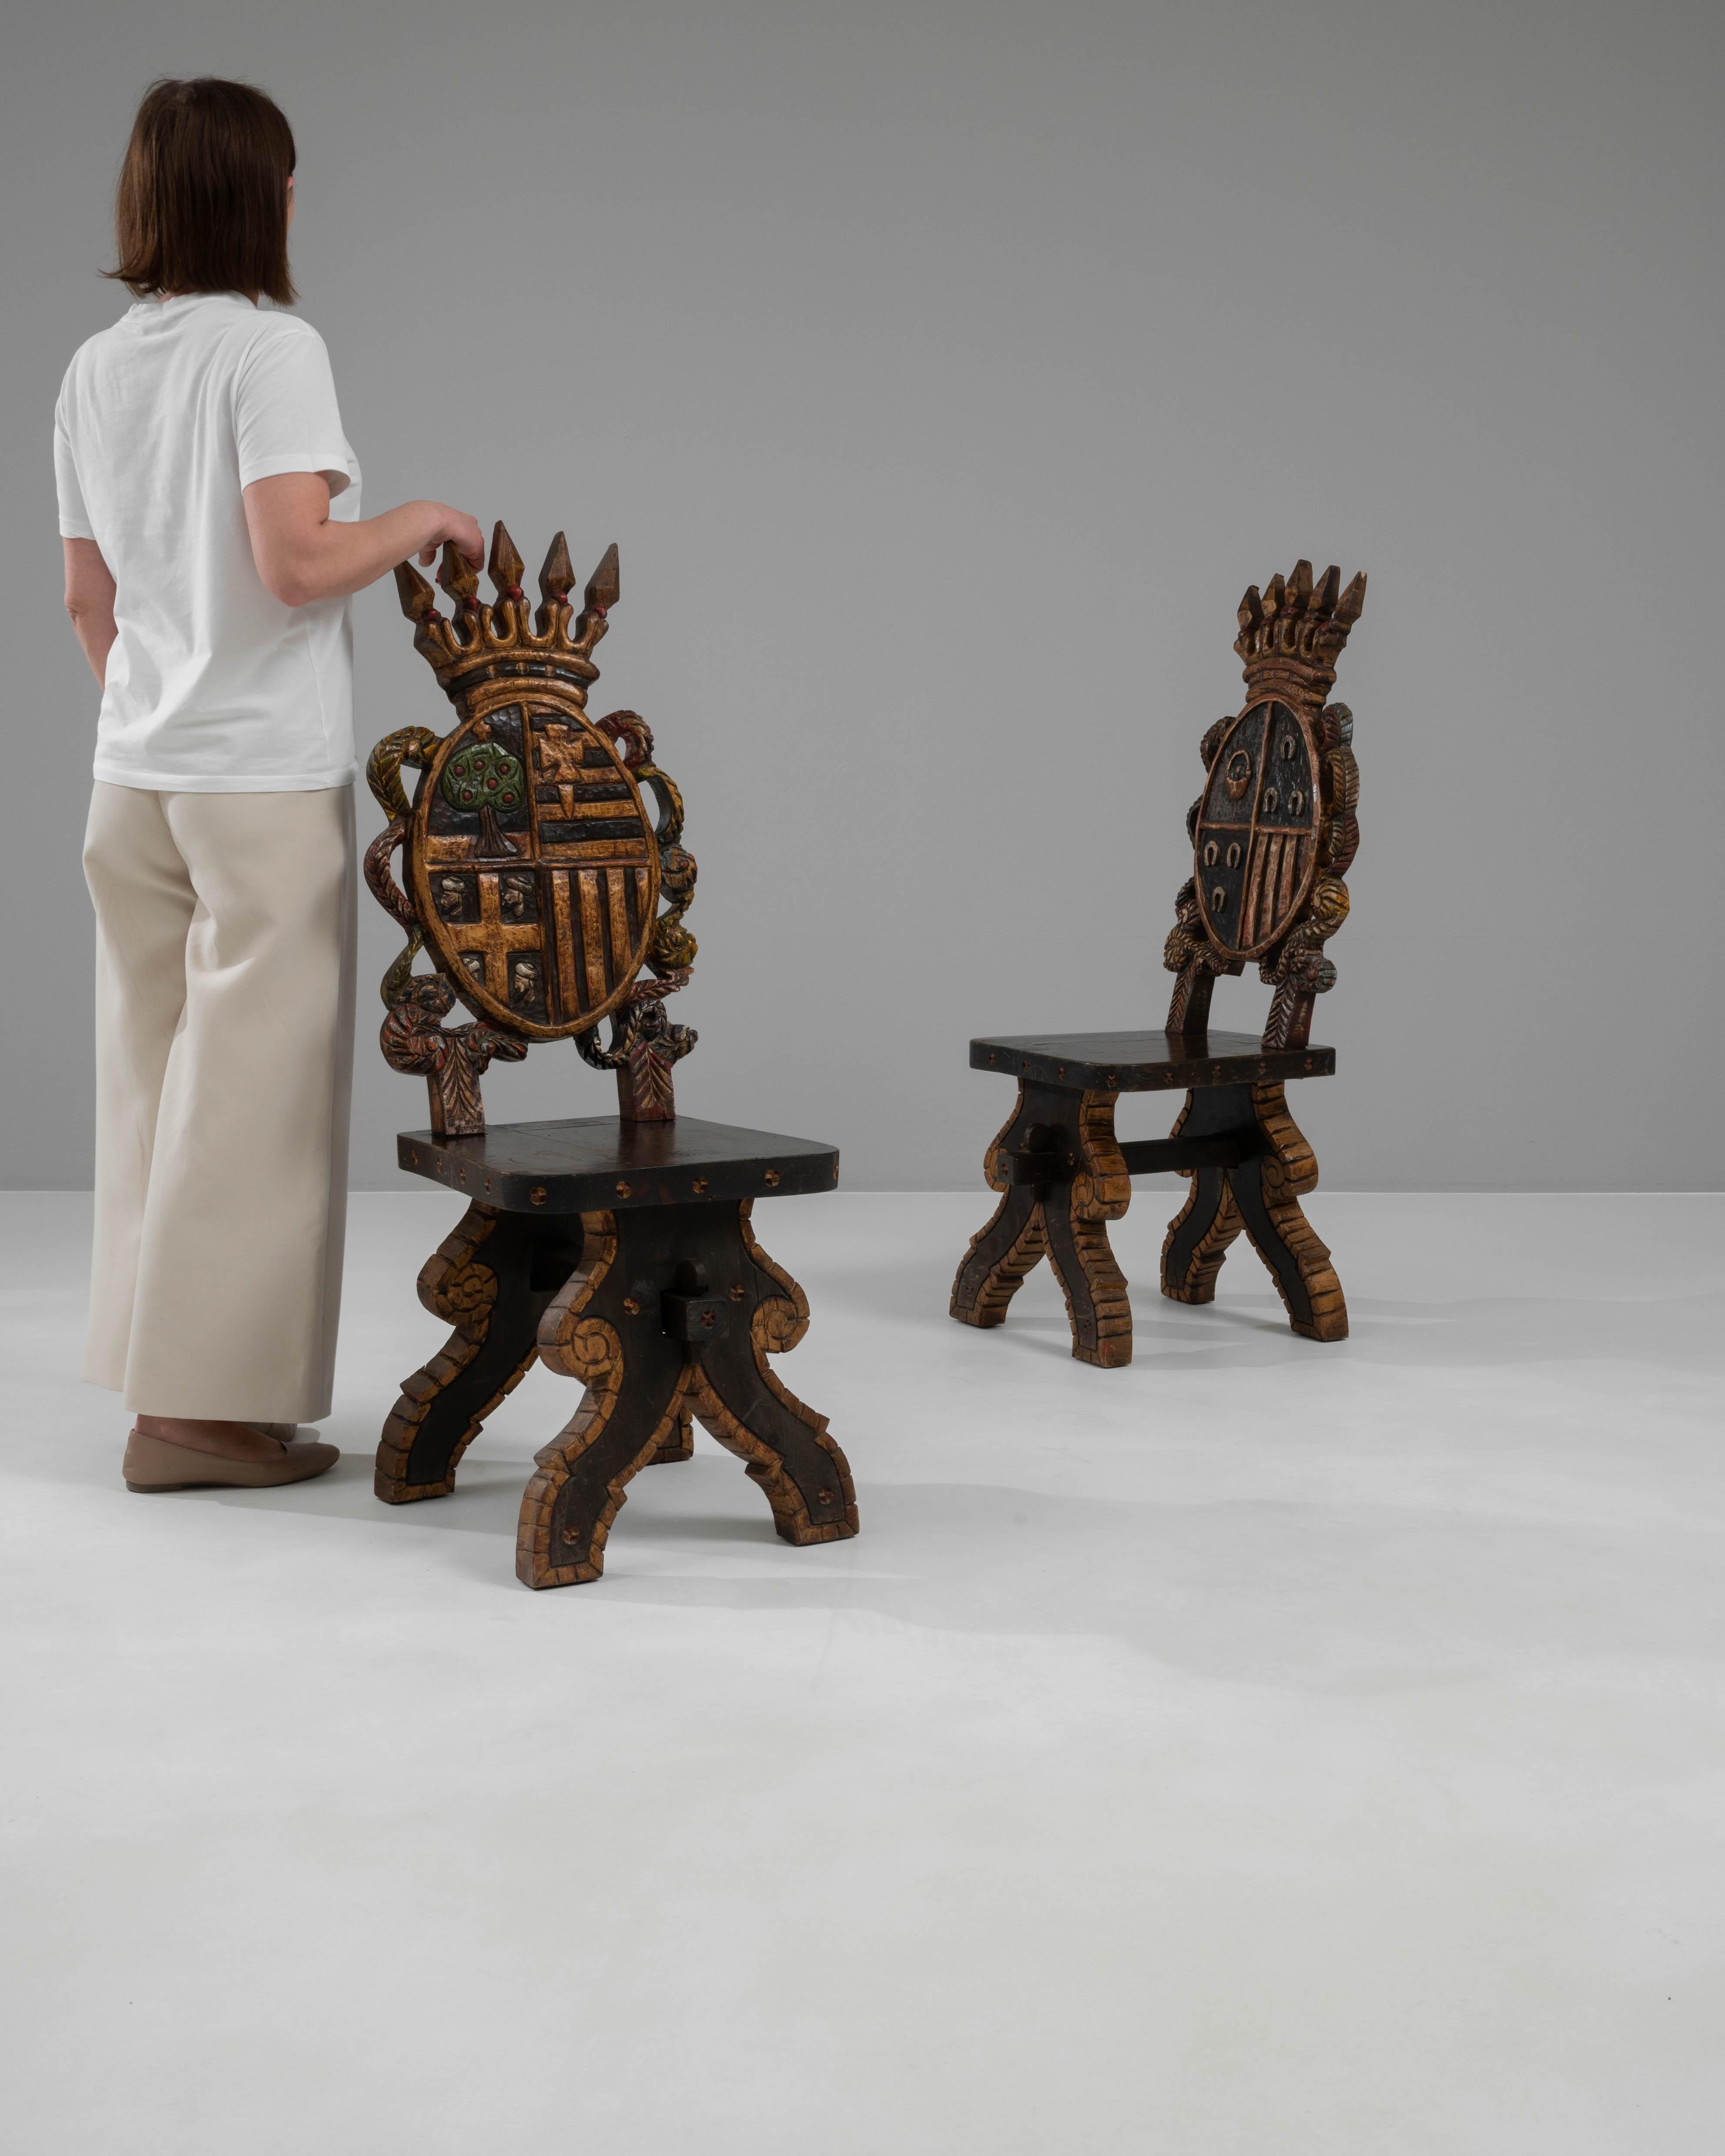 Entrez dans le royaume de l'opulence royale avec cette extraordinaire paire de chaises espagnoles en bois du XXe siècle, qui n'est rien de moins qu'un chef-d'œuvre sculptural. Ces chaises sont un magnifique hommage au patrimoine espagnol, avec des